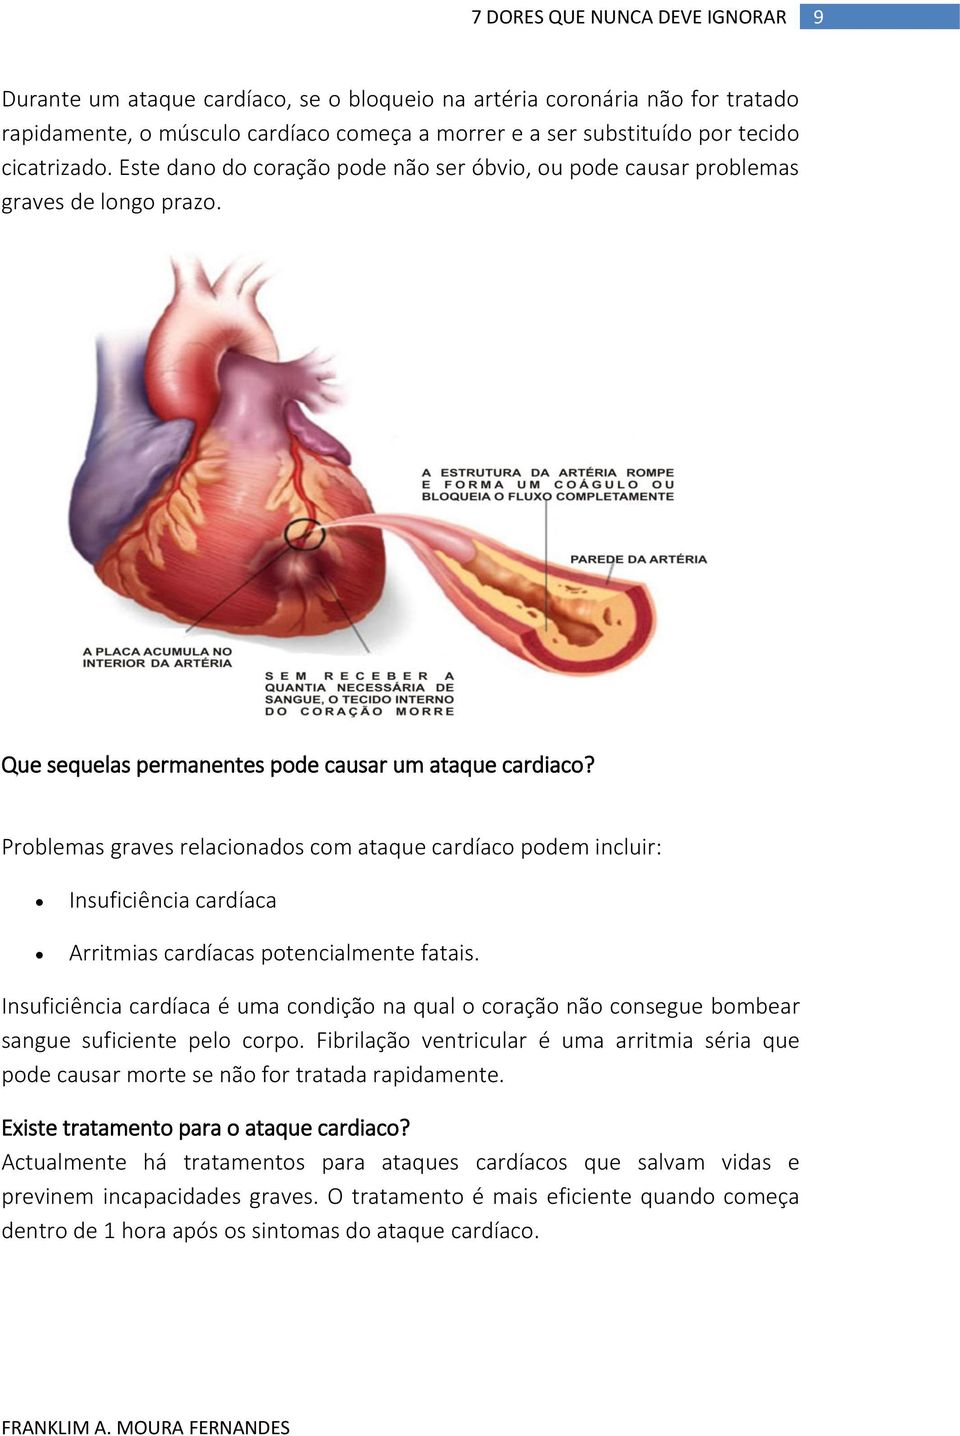 Problemas graves relacionados com ataque cardíaco podem incluir: Insuficiência cardíaca Arritmias cardíacas potencialmente fatais.